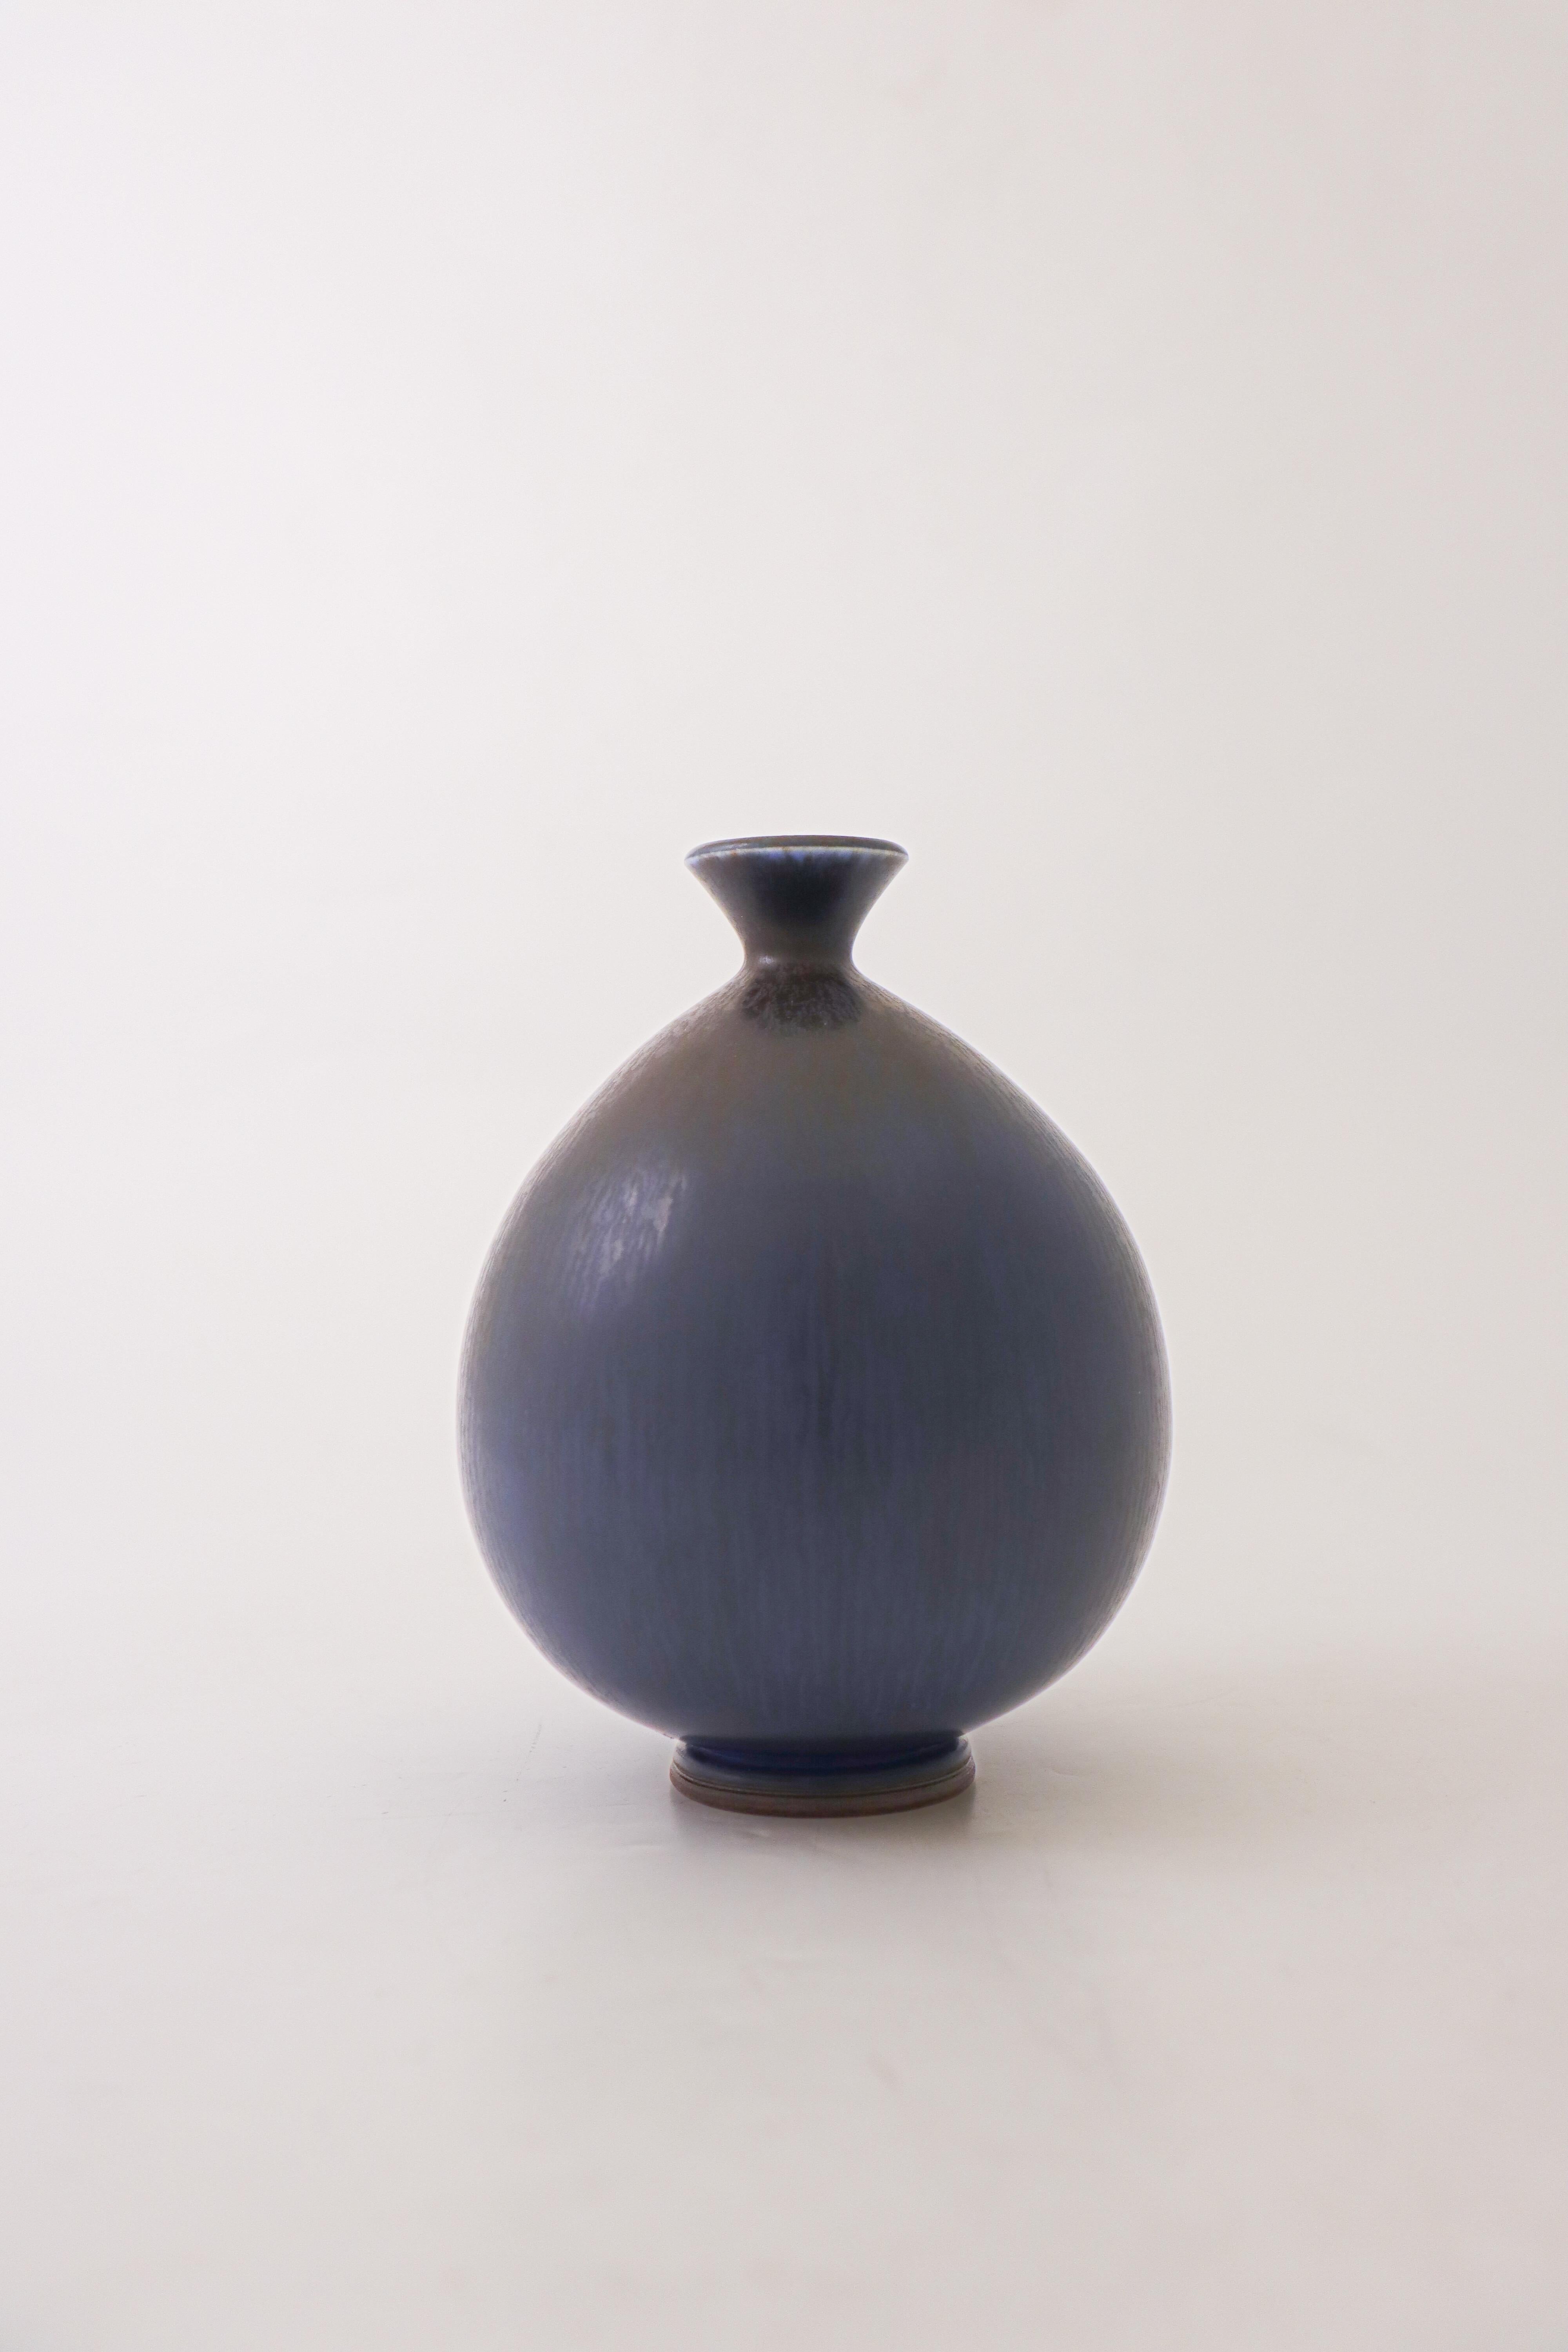 Un vase bleu profond conçu par Berndt Friberg à Gustavsberg à Stockholm, le vase est 15 cm (6